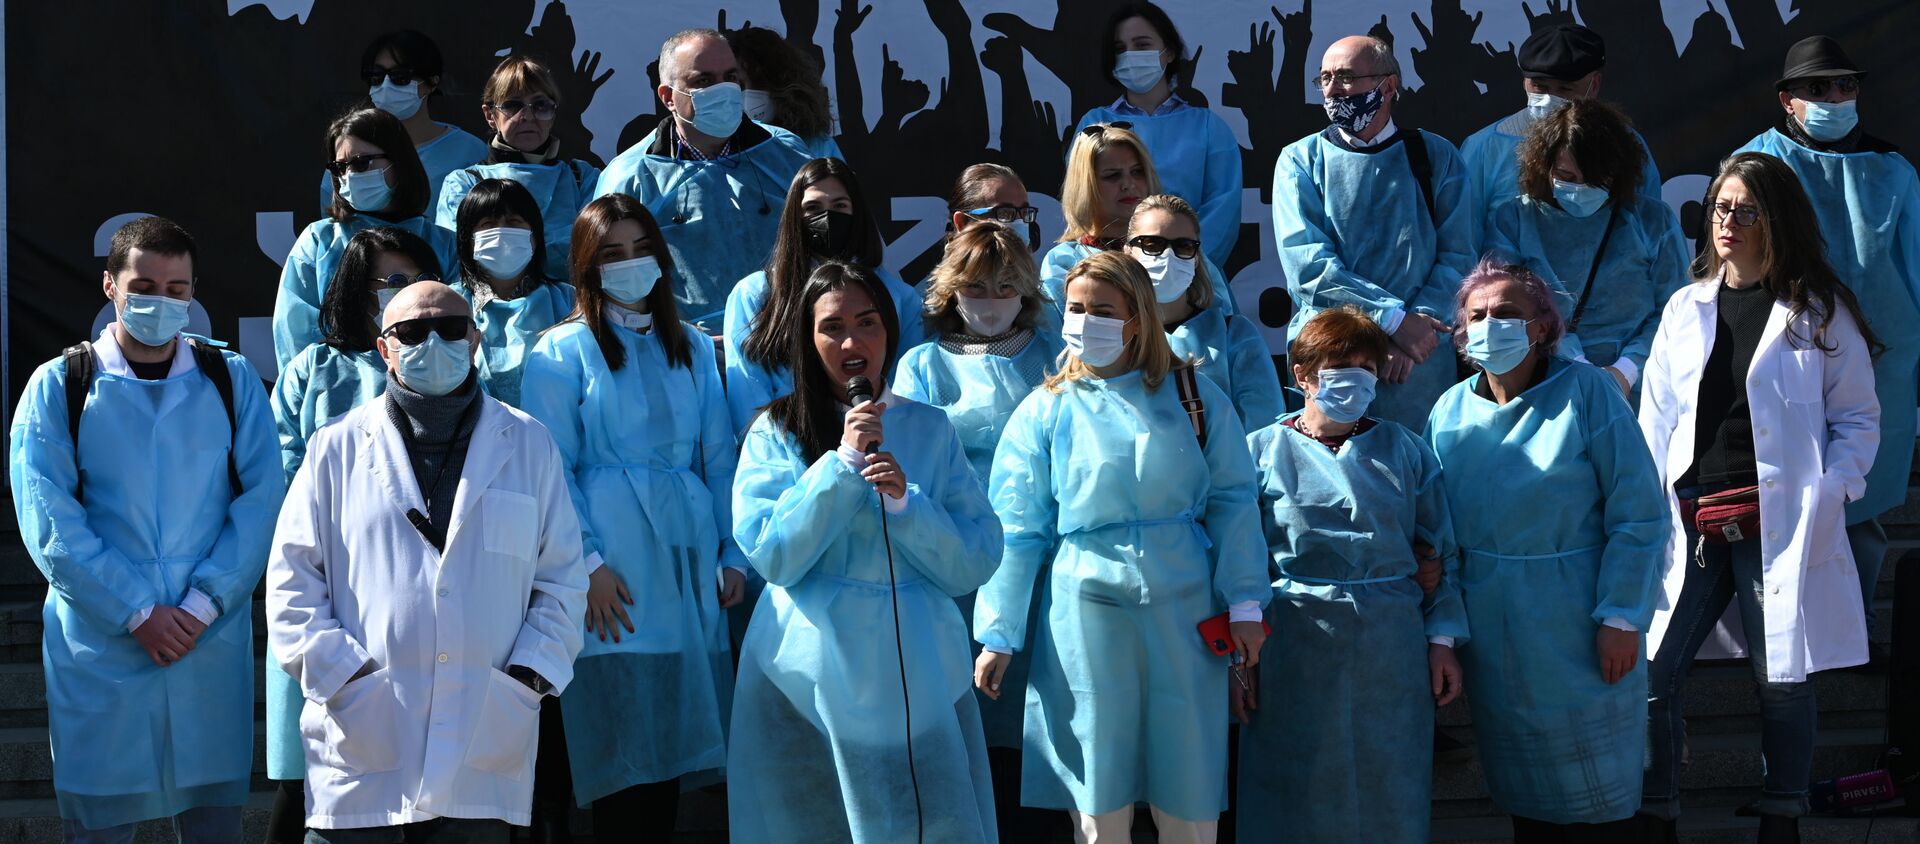 Грузинские медики на акции протеста у парламента Грузии 6 марта 2021 года - Sputnik Грузия, 1920, 06.03.2021